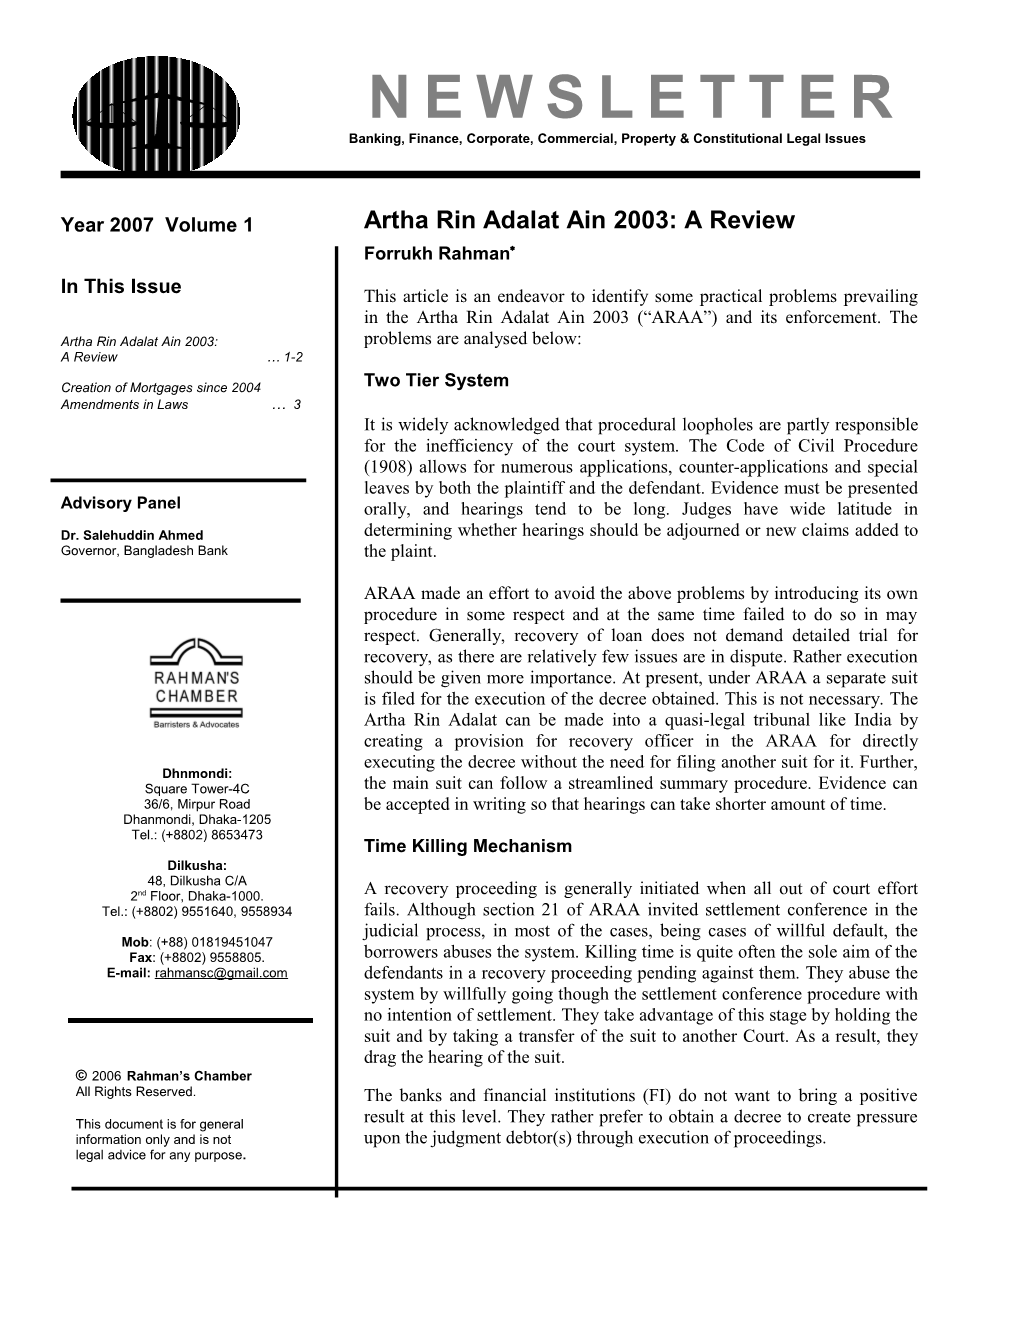 Artha Rin Adalat Ain 2003: a Review